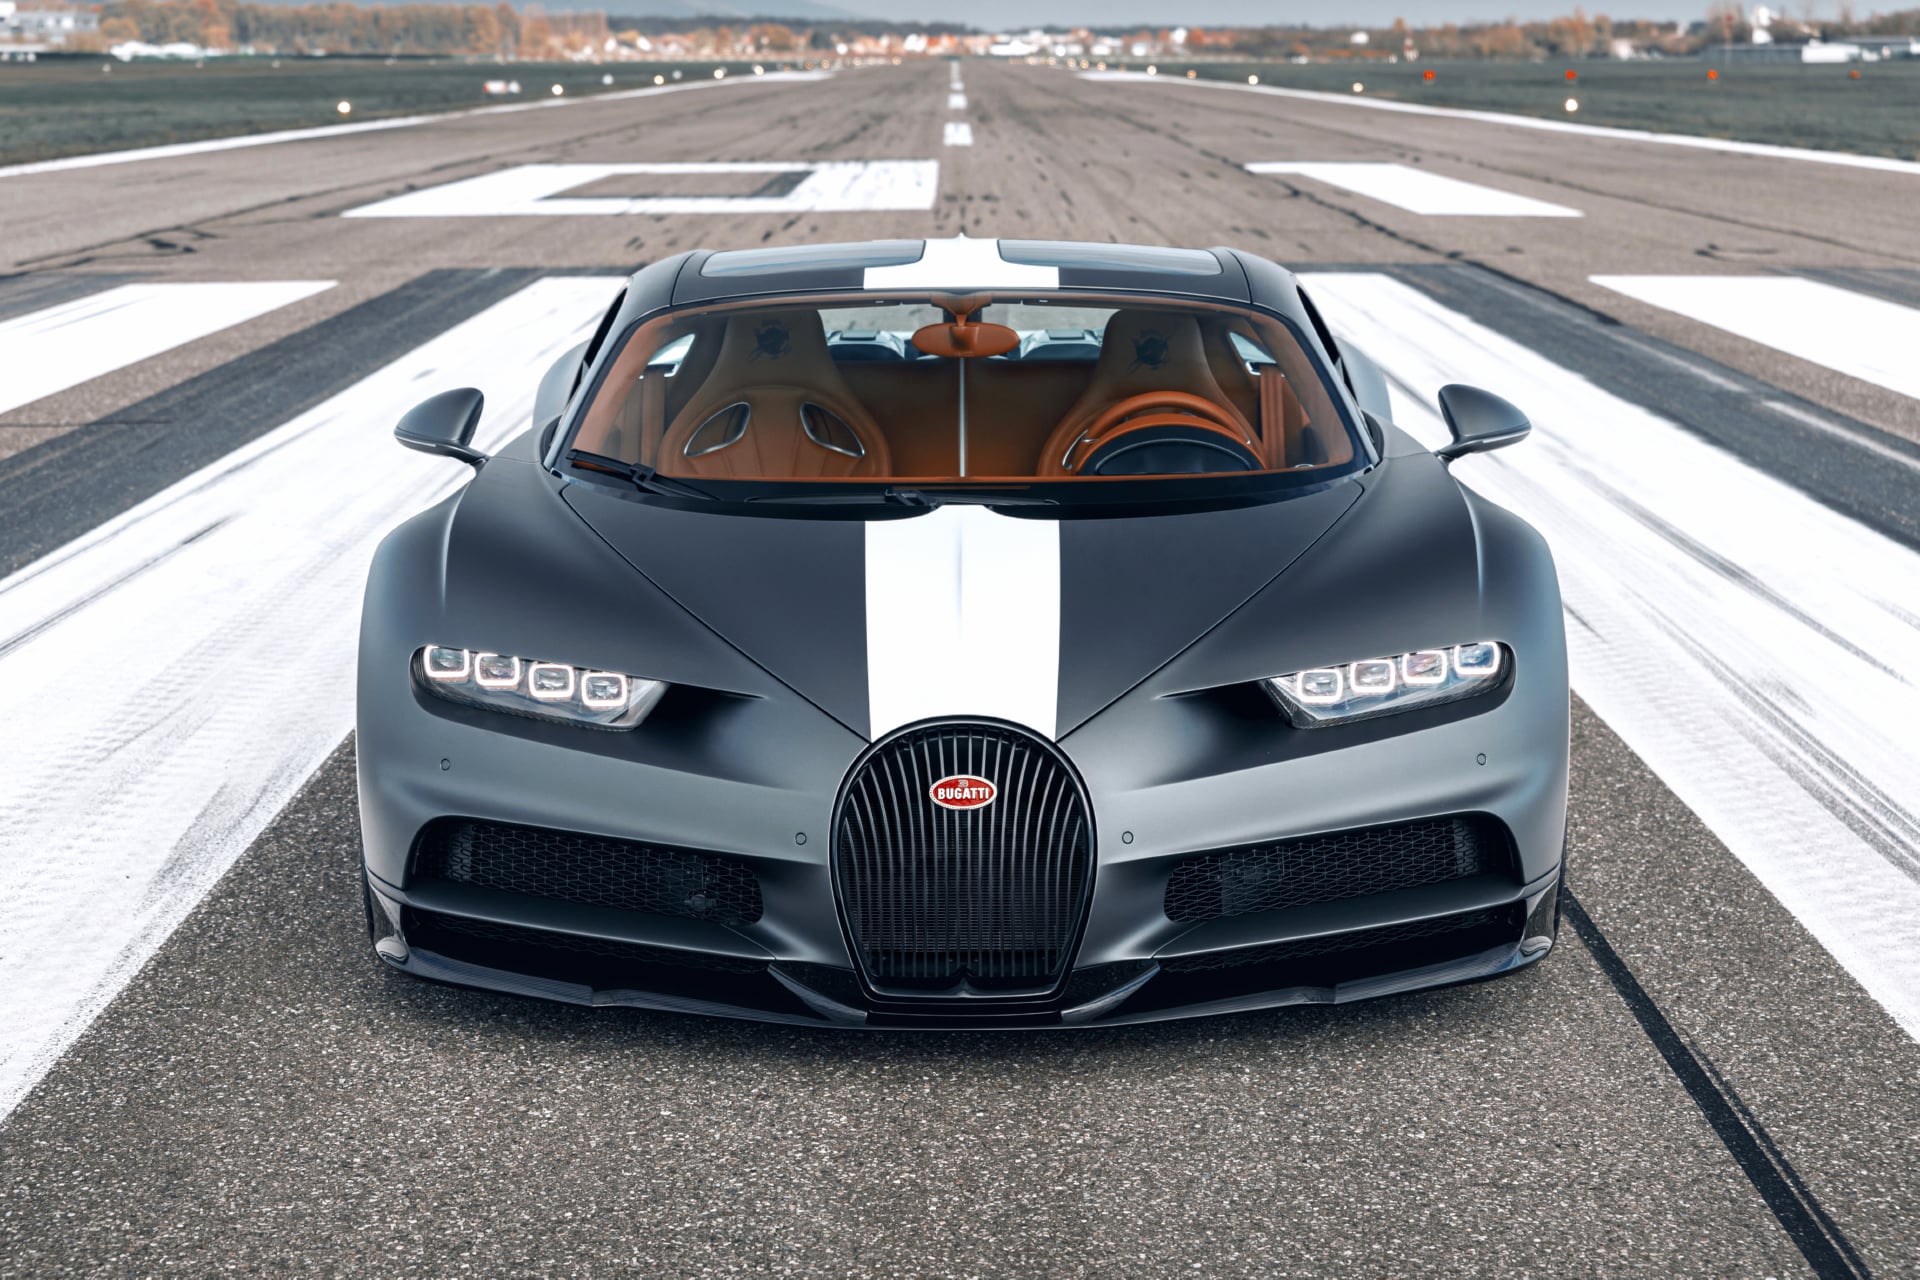 Bugatti Chiron Sport Les Légendes du Ciel at 1600 x 1200 size wallpapers HD quality